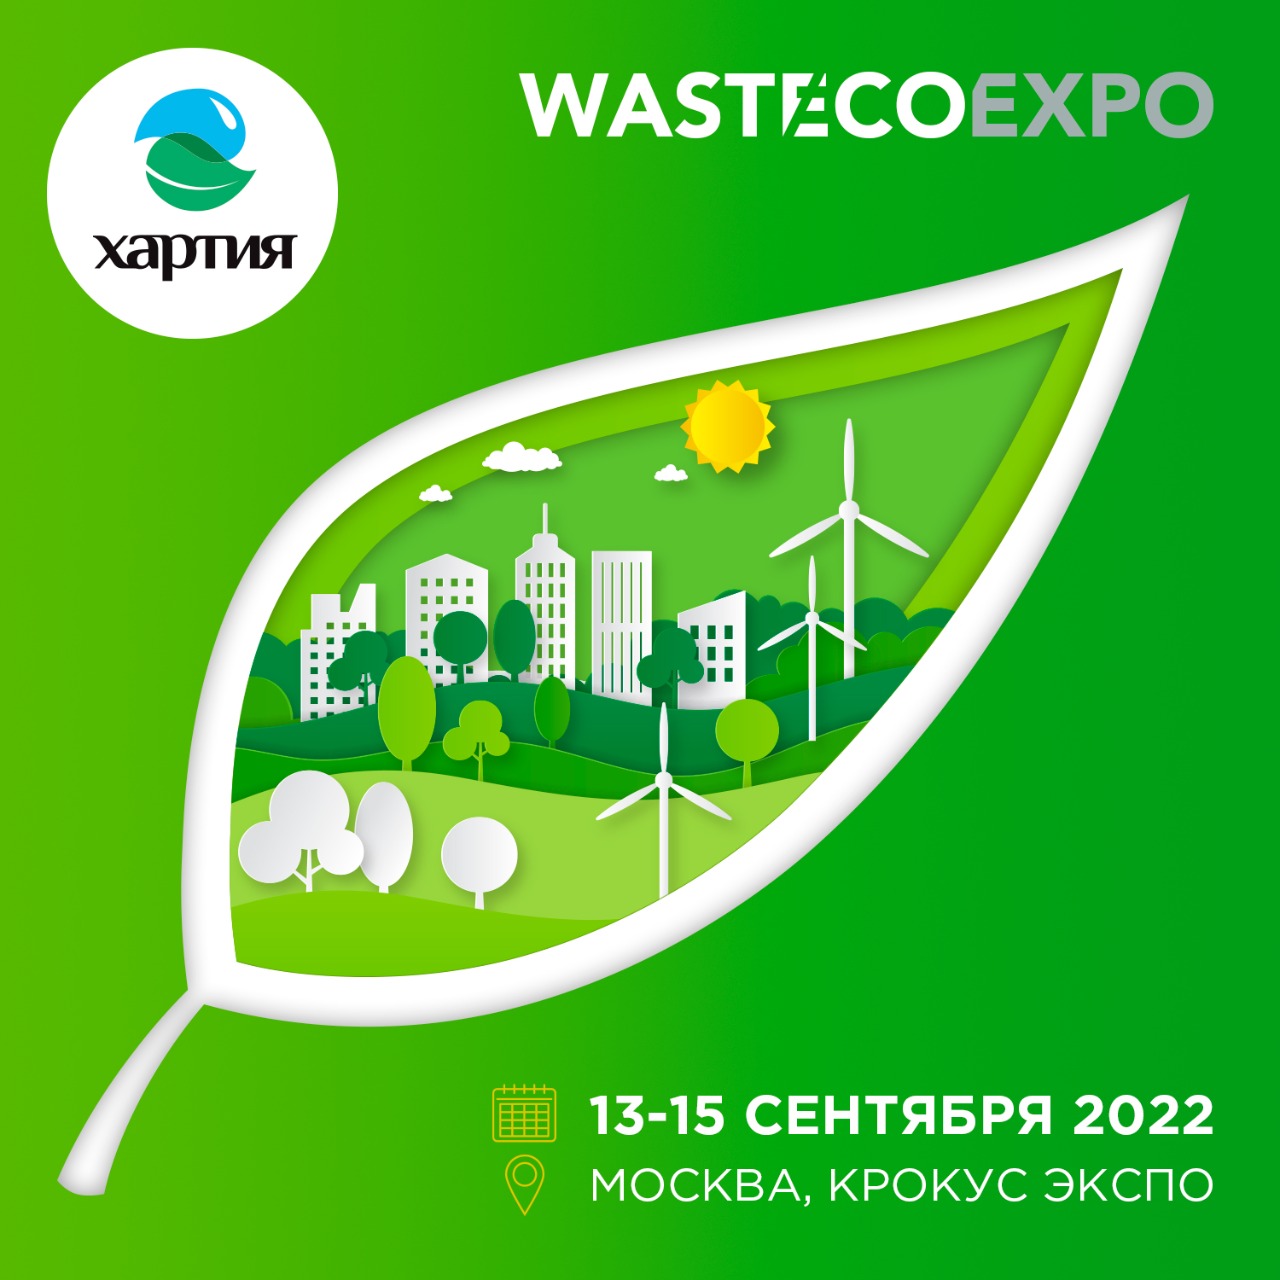 ООО «Хартия» стало Генеральным партнером выставки WasteEcoExpo-2022